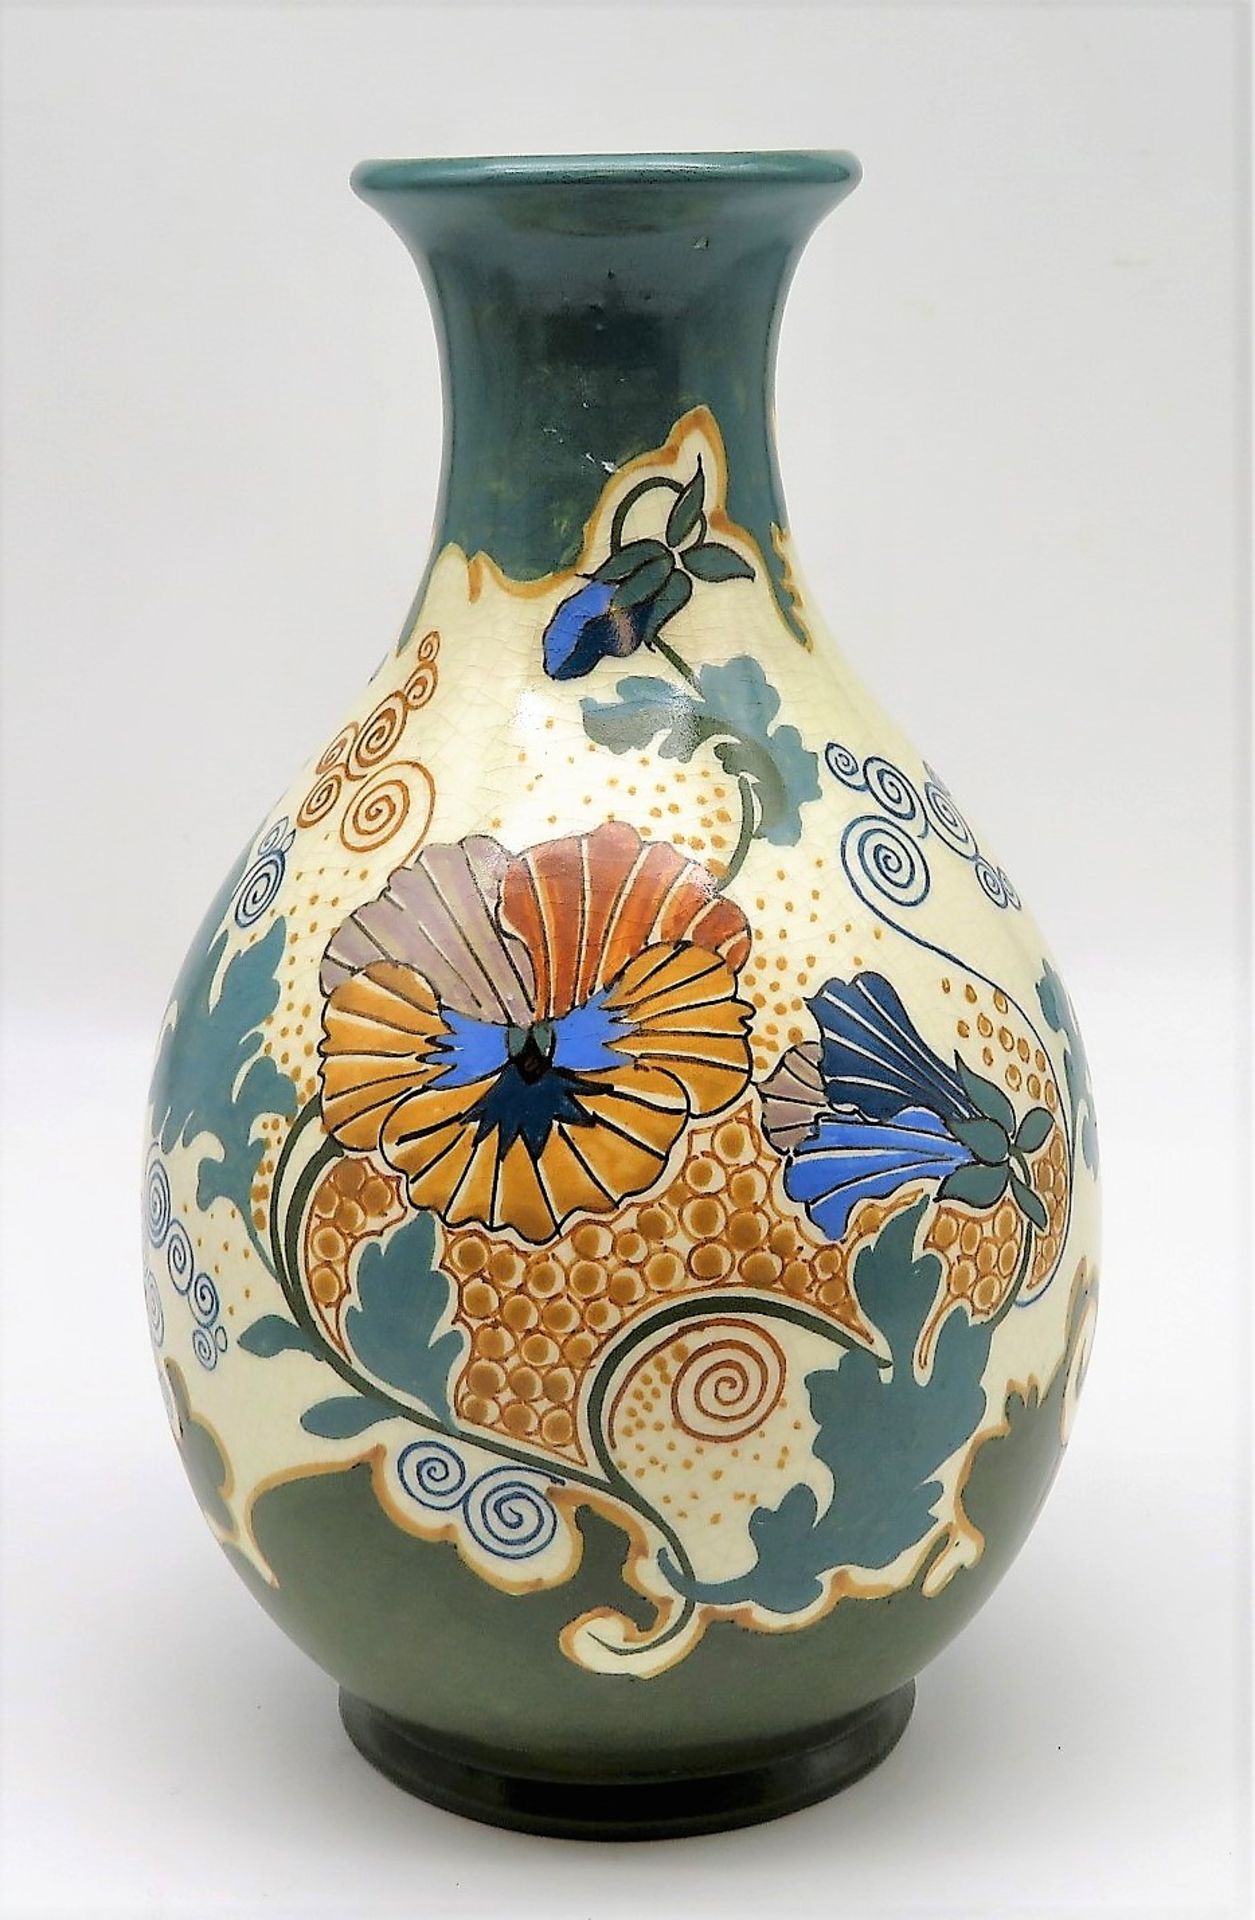 Jugendstil Vase, Niederlande, Arnhem, um 1900, sign. "Pensée", Fayence mit polychromer Bemalung, h